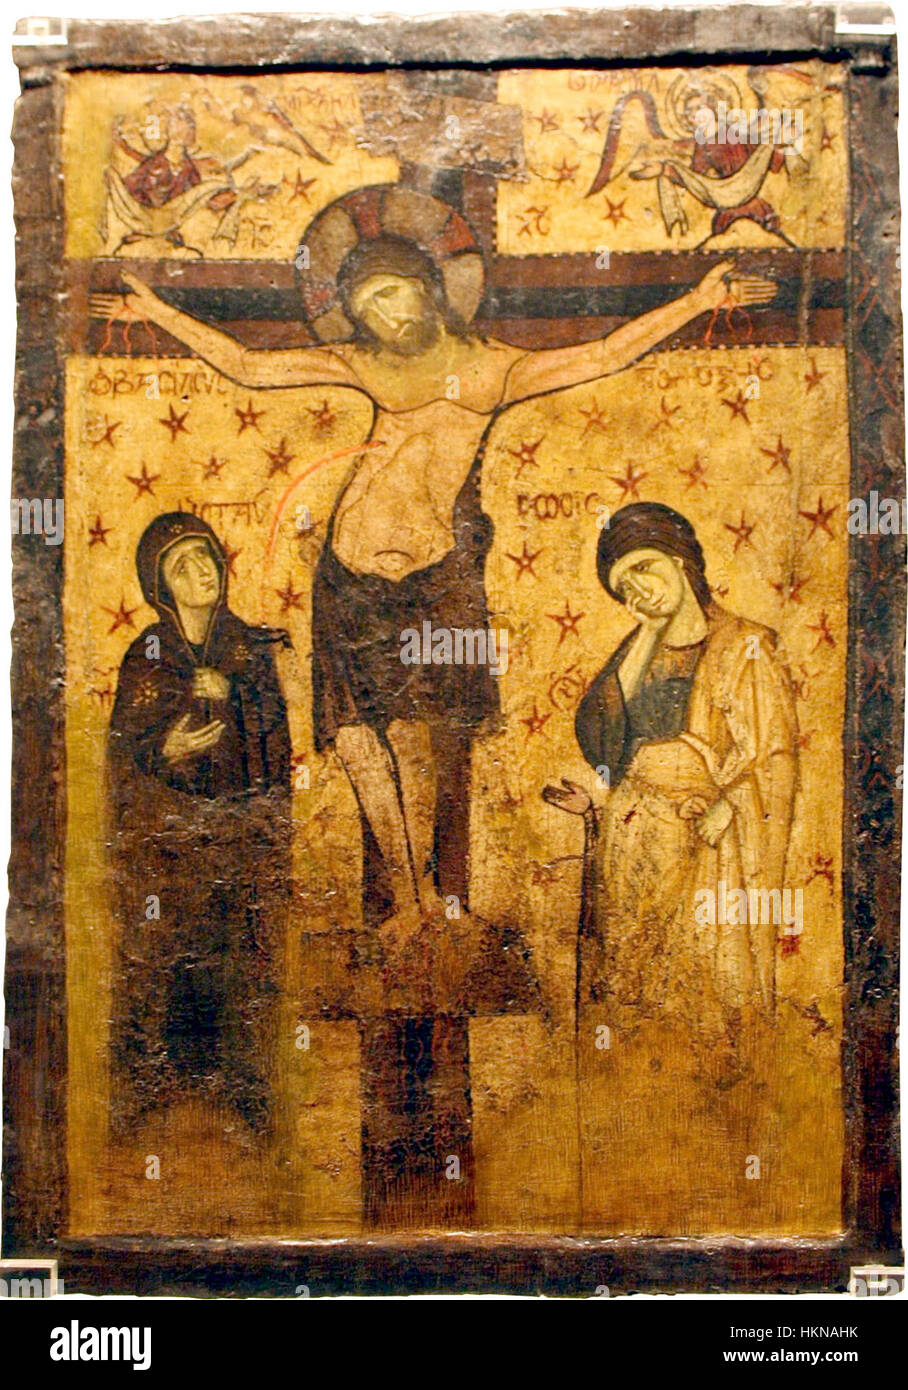 1988 - Museo Bizantino di Atene - Crocifissione - 9X-XIII secolo - Foto di Giovanni dall'Orto, Nov 12 2 Foto Stock